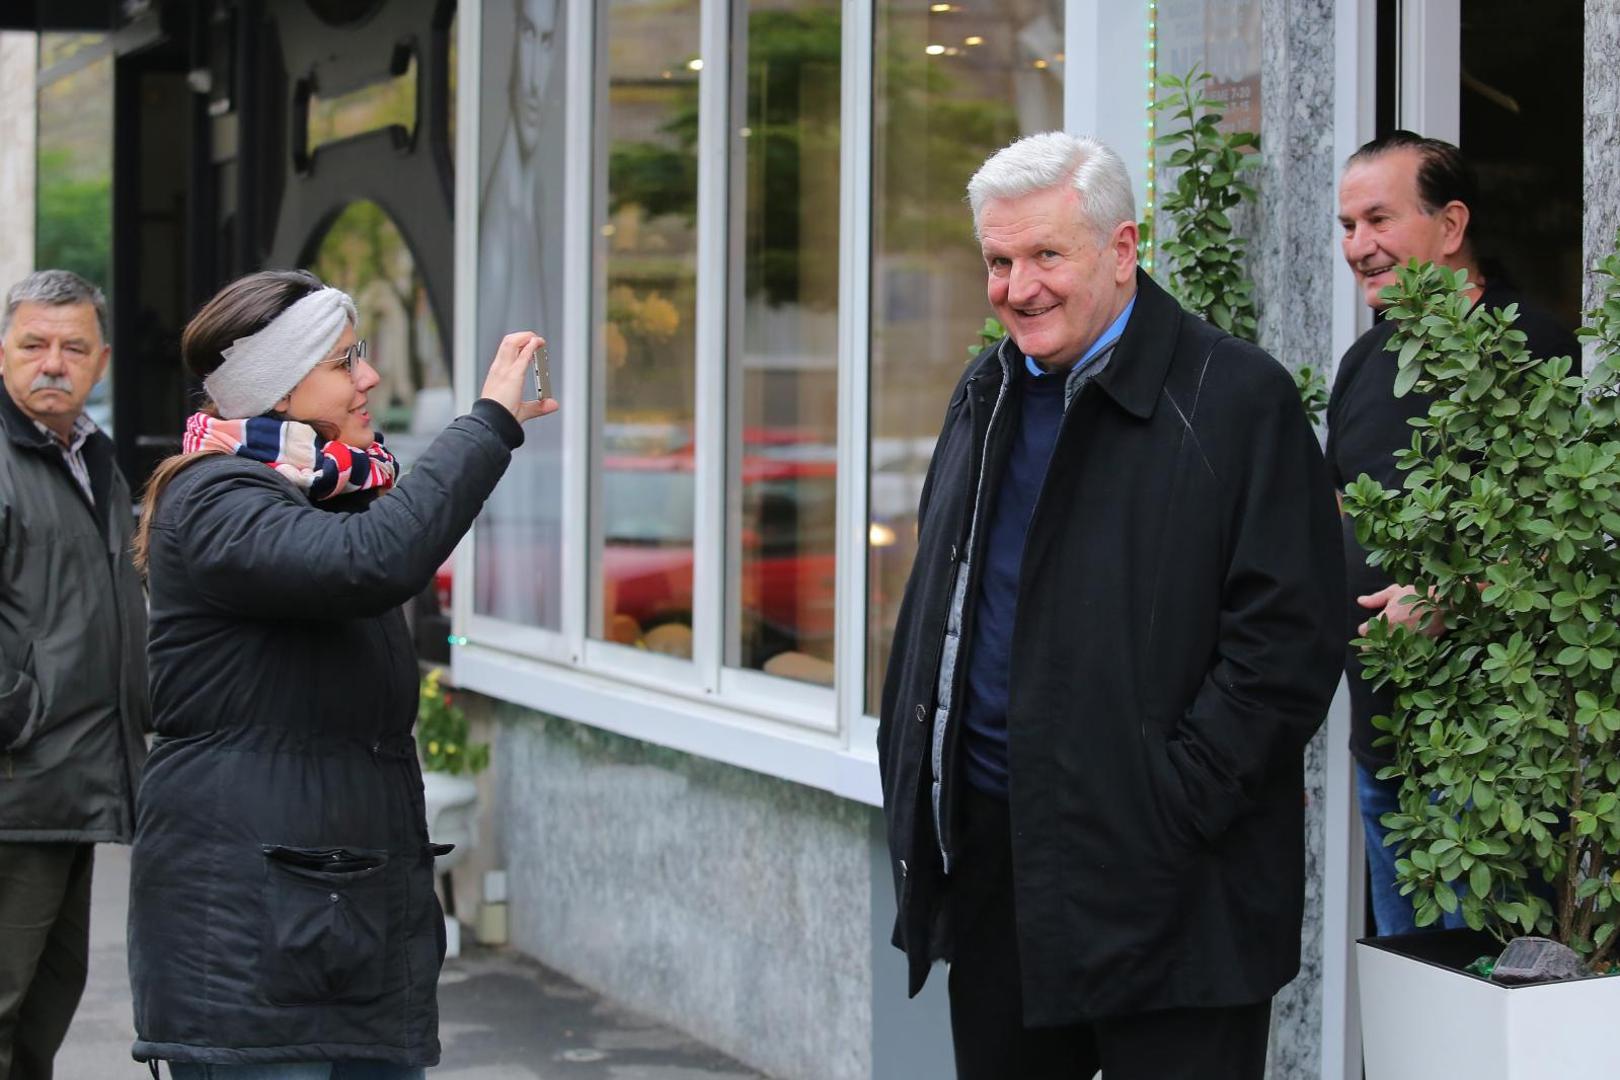 Novinari su Todorića dočekali ispred Nene, a on je dobro raspoložen najavio da ide na izbore.